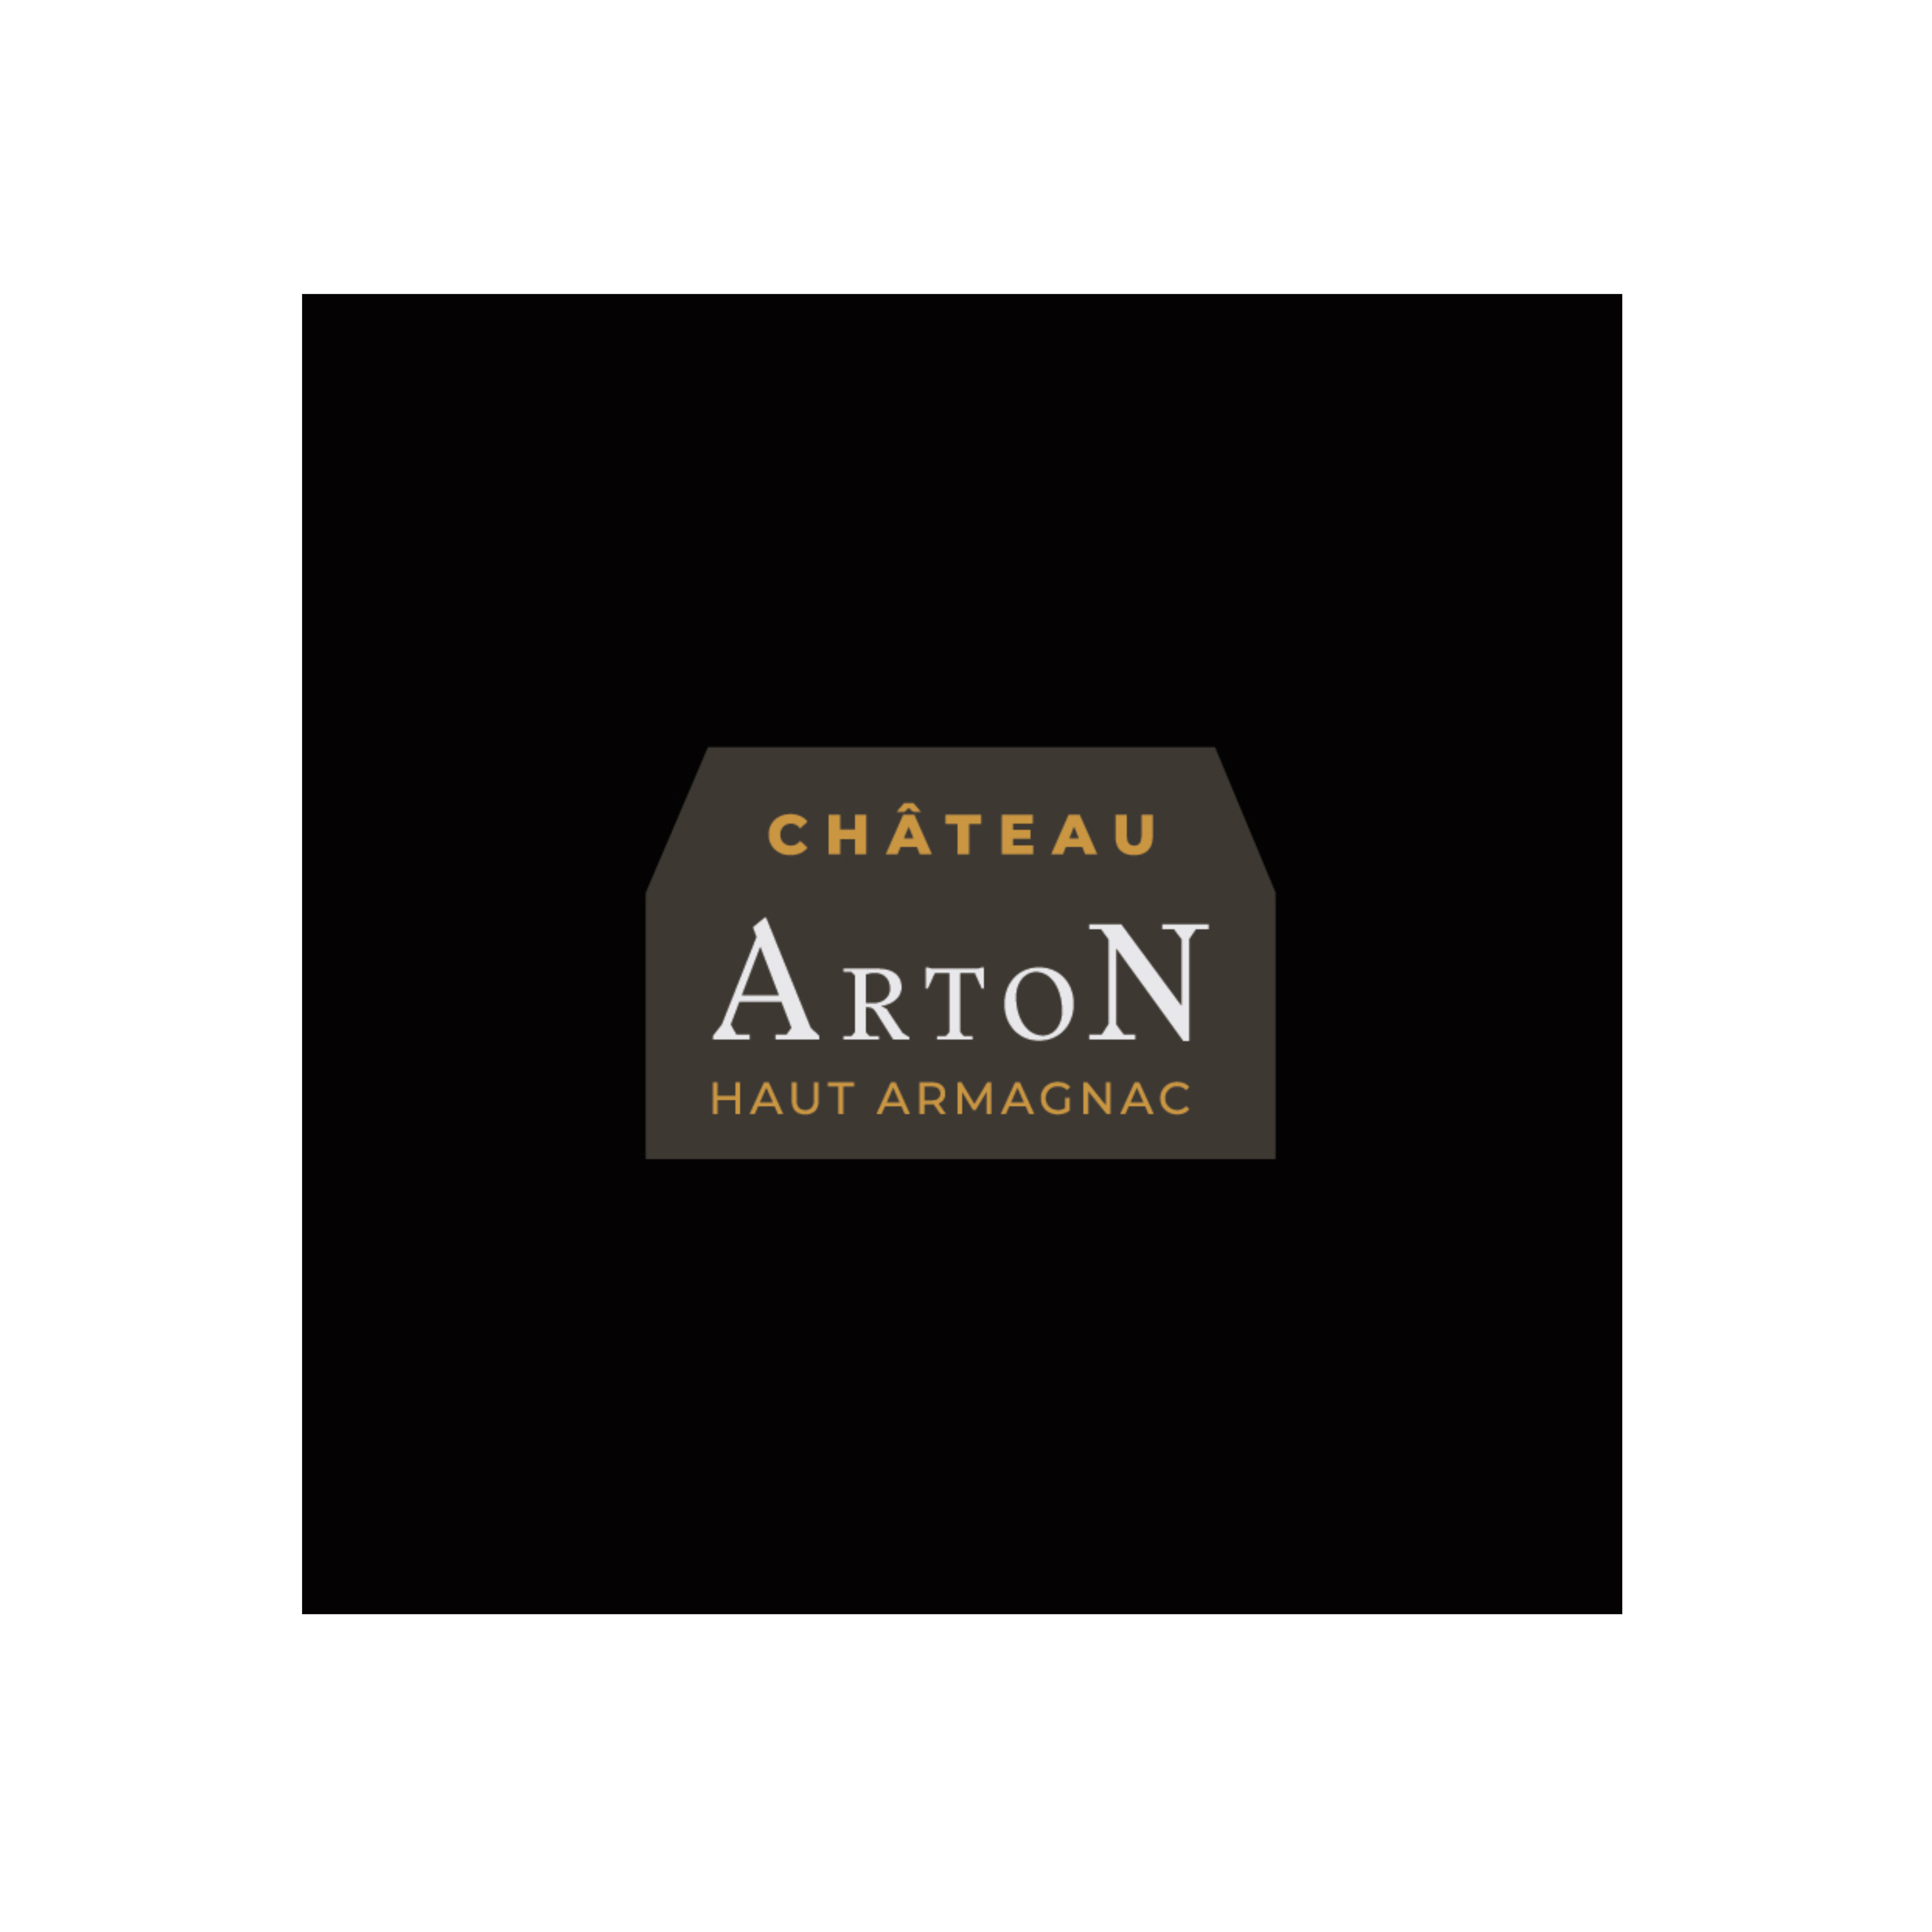 Château Arton